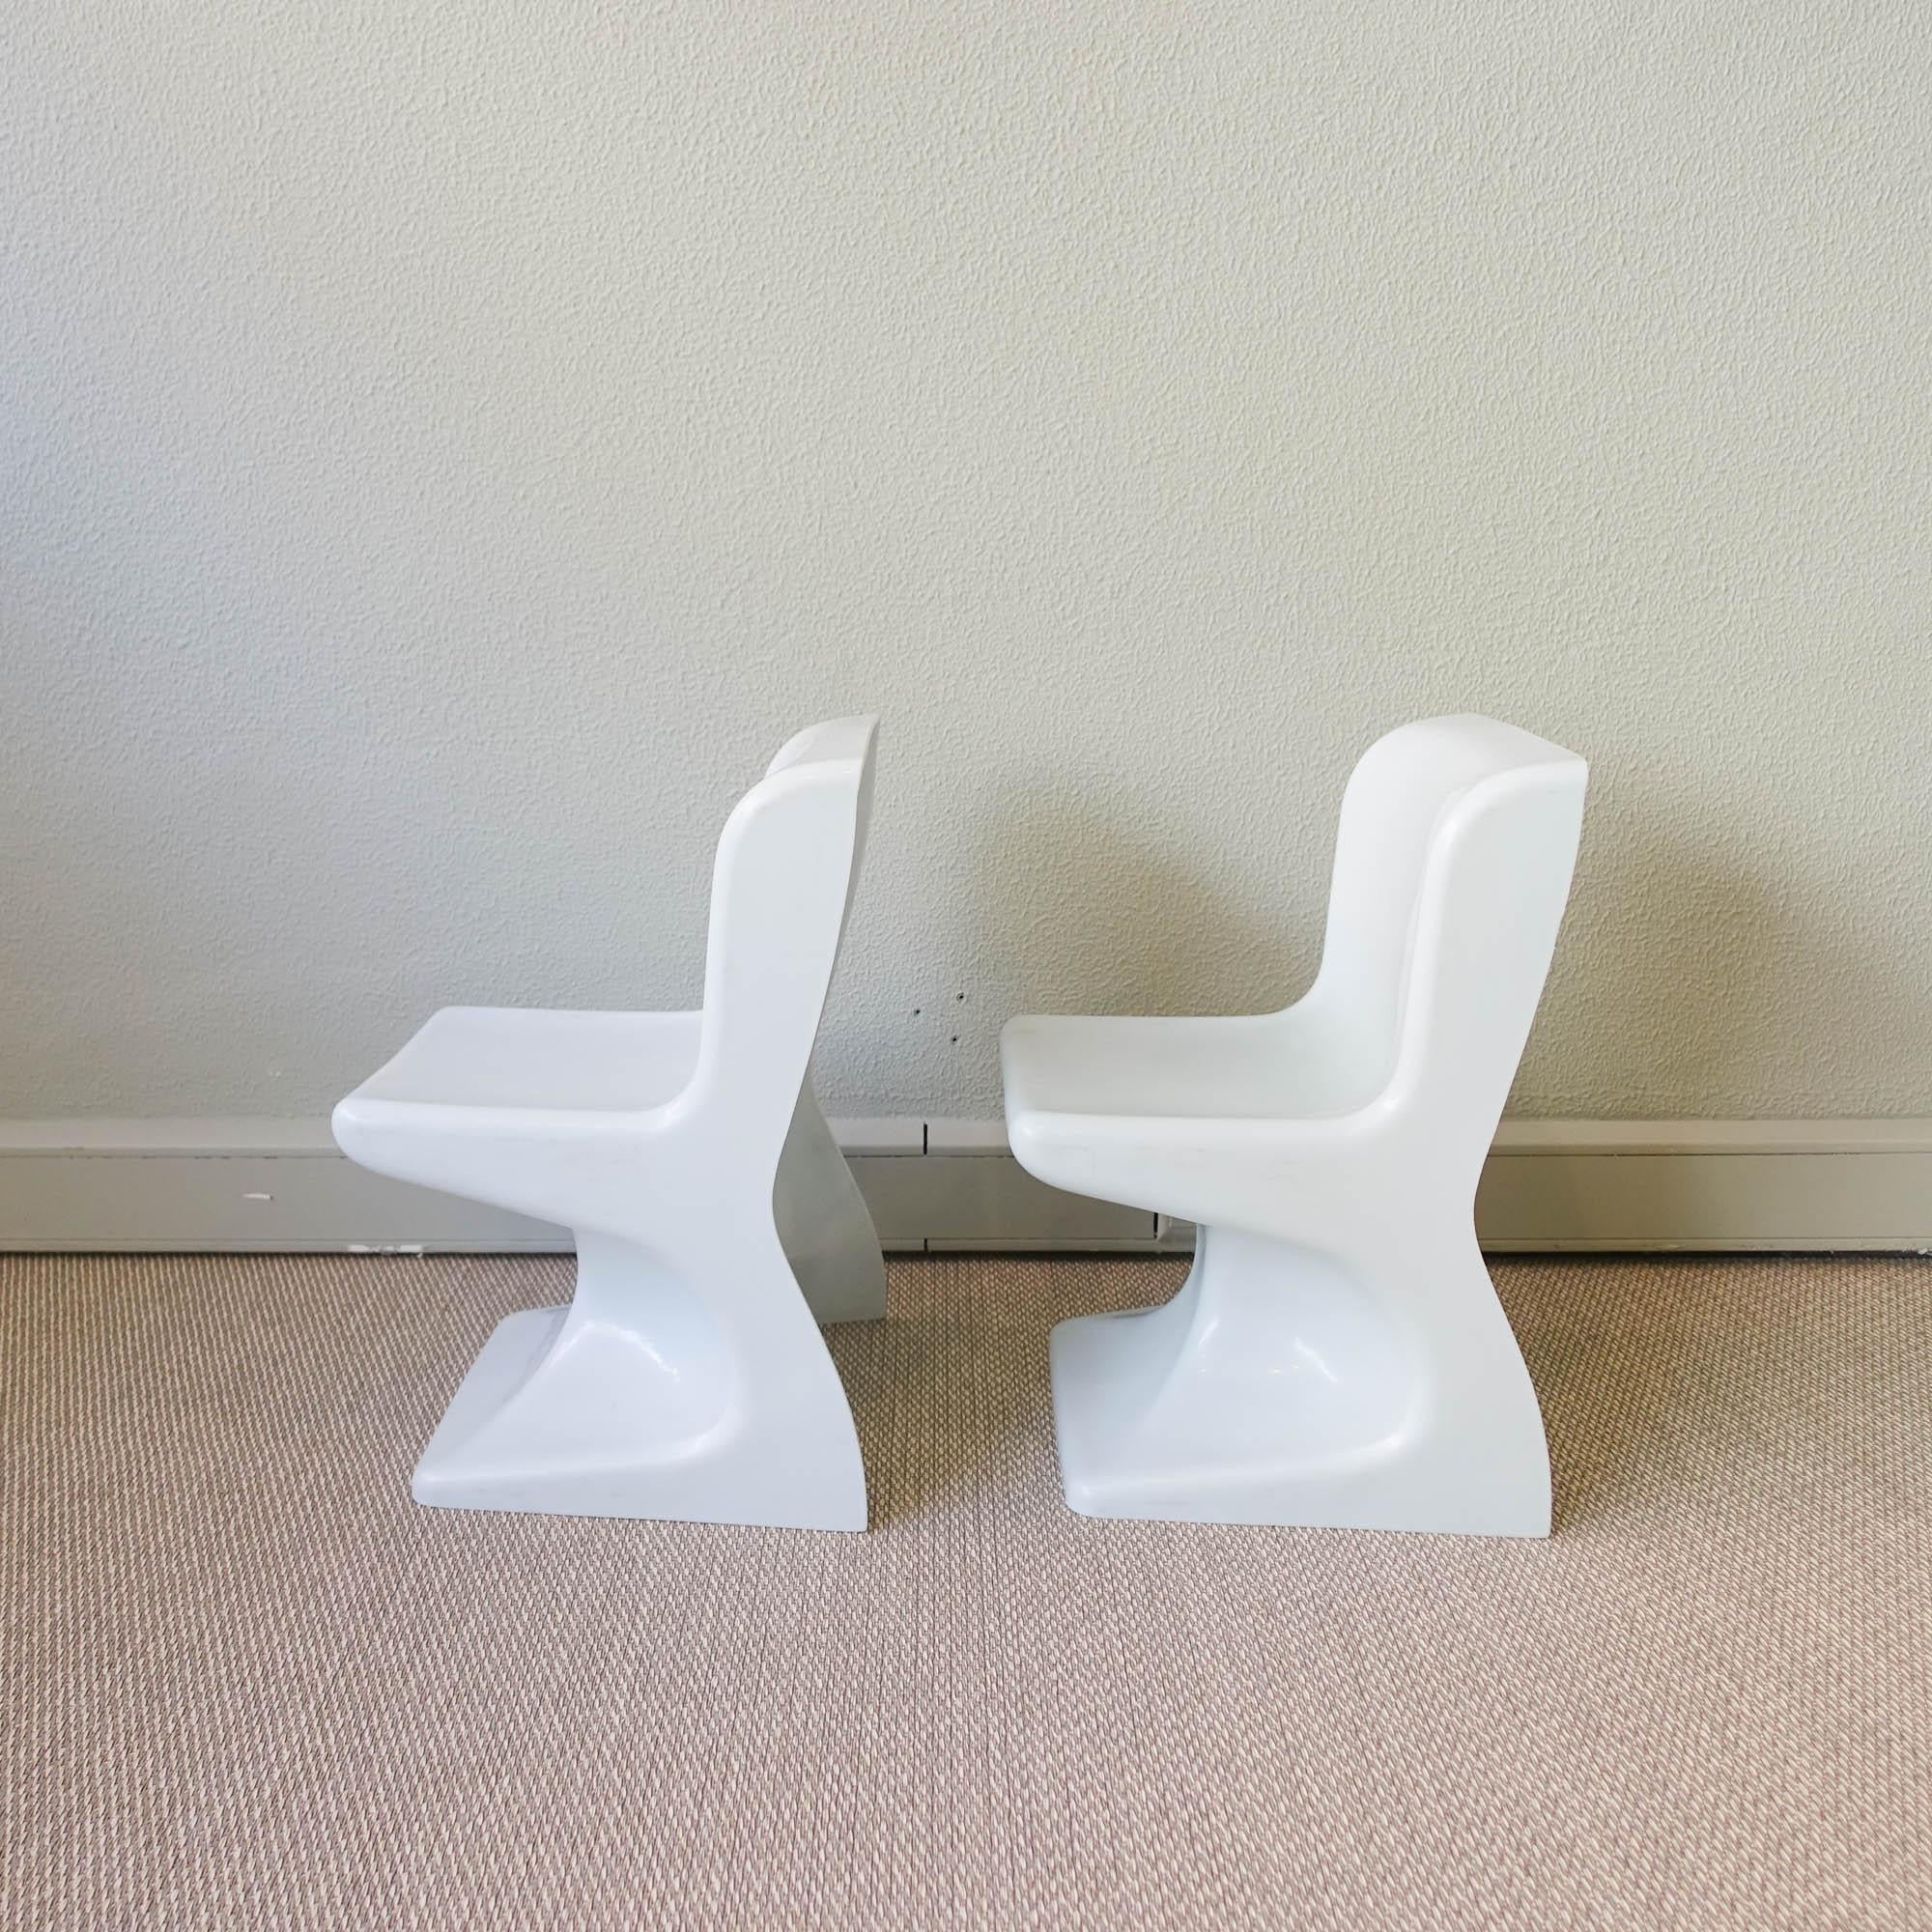 Cette paire de chaises pour enfants a été conçue par Patrick Gingembre pour la SELAP, en France, dans les années 1970. Ils sont fabriqués en plastique moulé blanc avec une forme organique très caractéristique du style pop et de l'